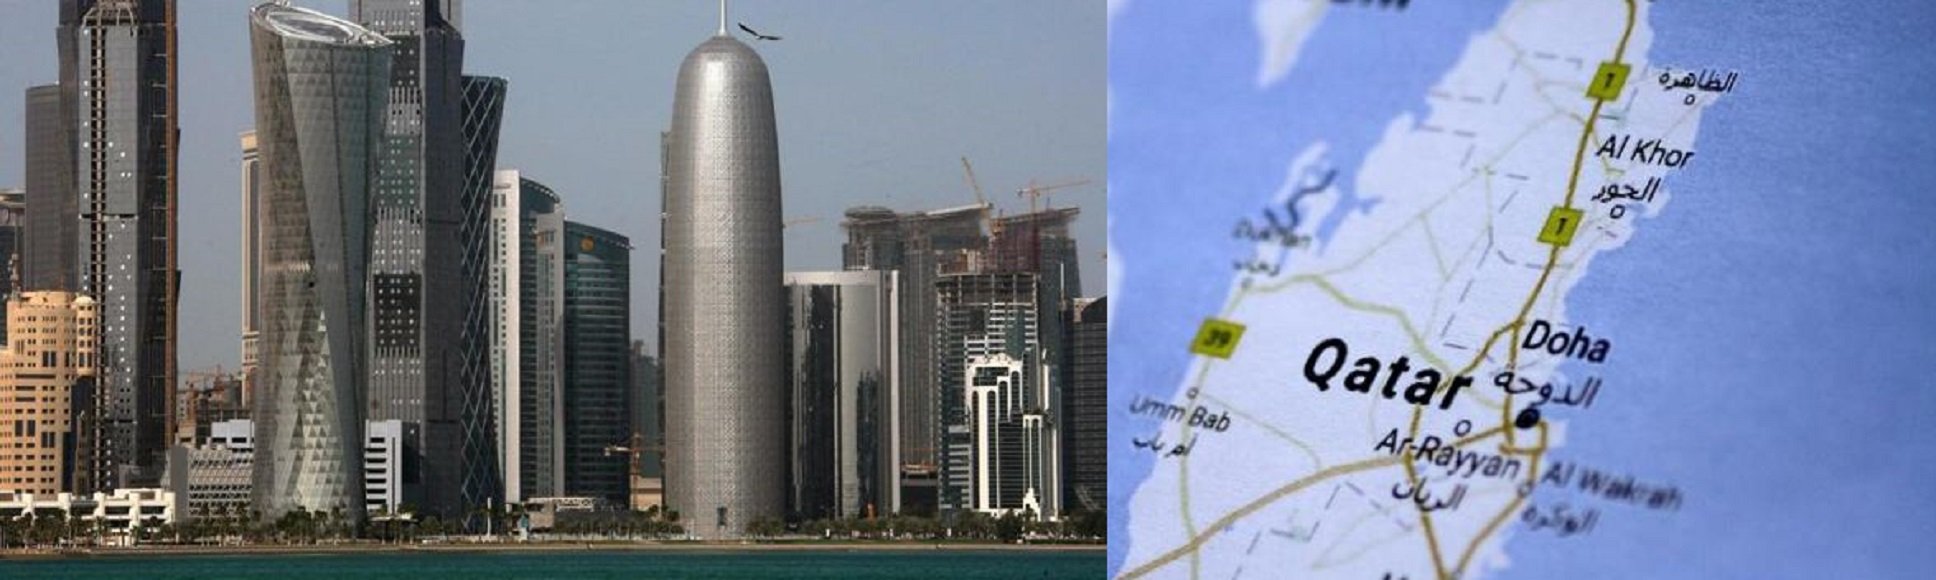 Τέσσερις αραβικές χώρες διακόπτουν τις σχέσεις τους με το Κατάρ